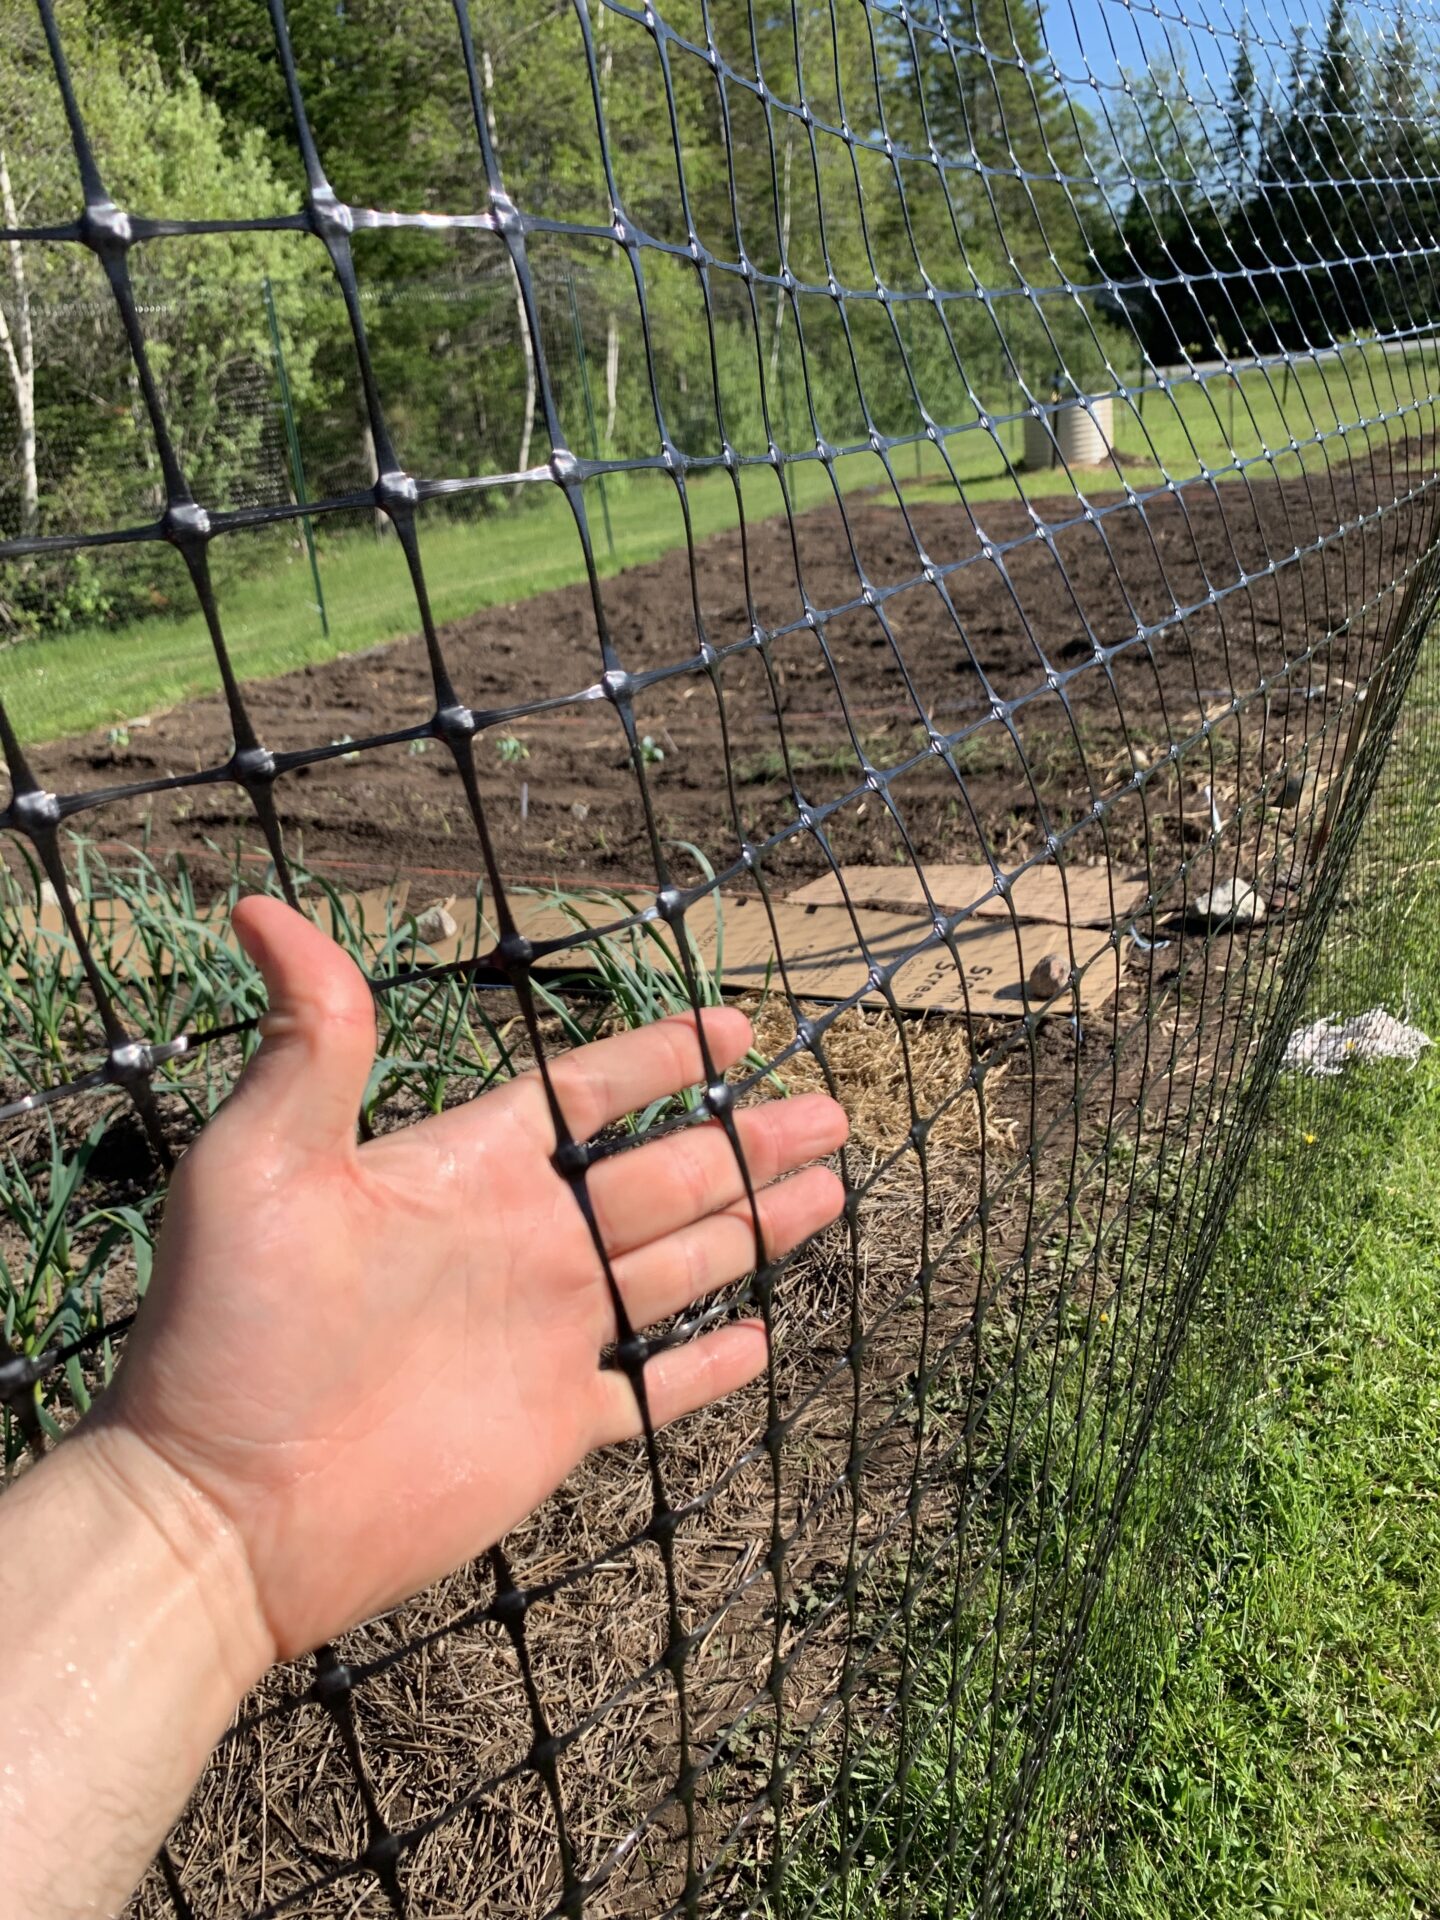 Hand through fencing in field garden